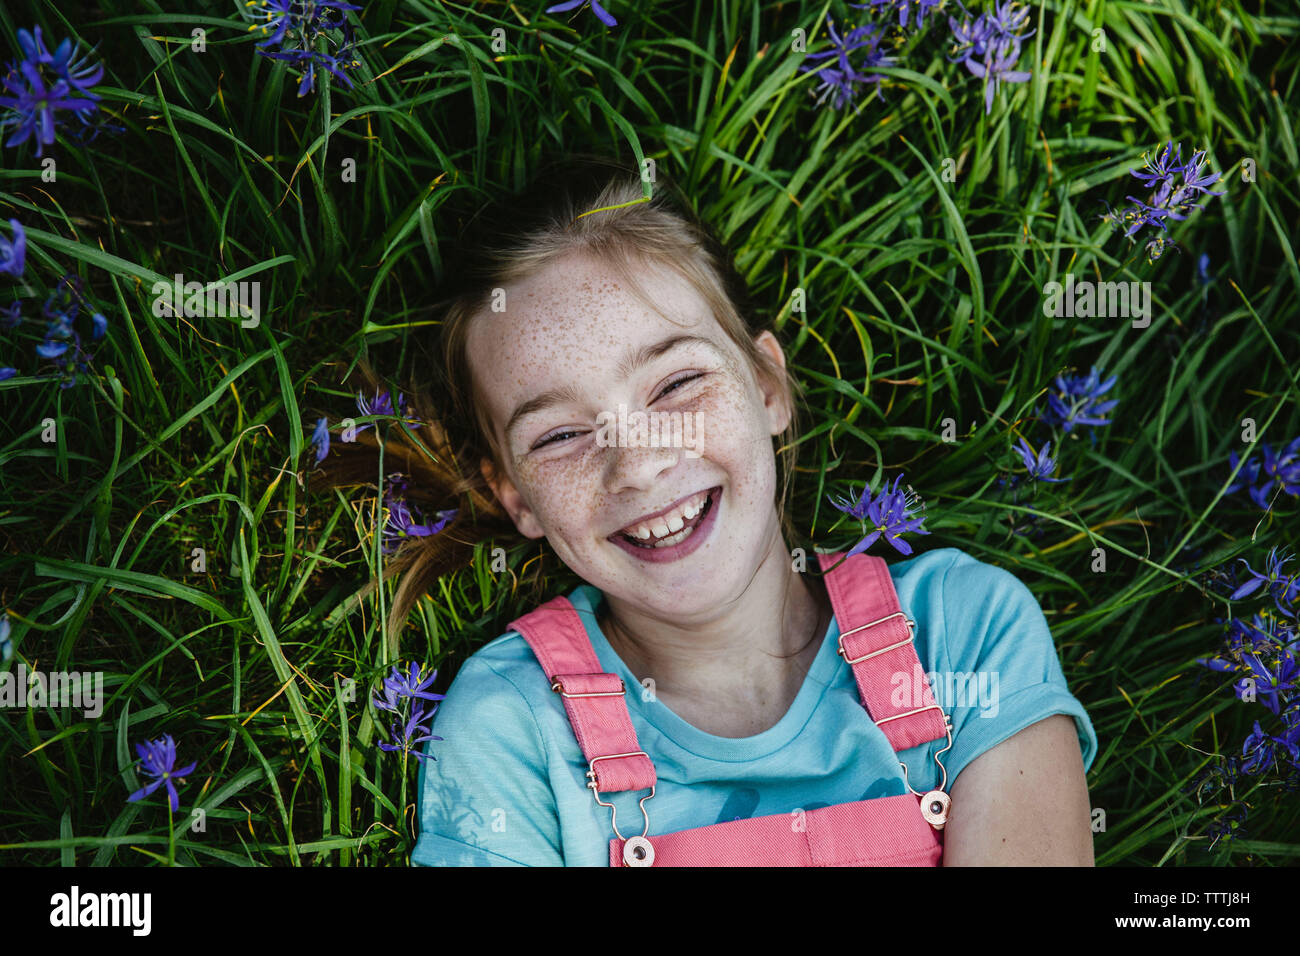 Vorderansicht des Mädchens mit Sommersprossen lächelnd in einem Feld von Blumen Stockfoto